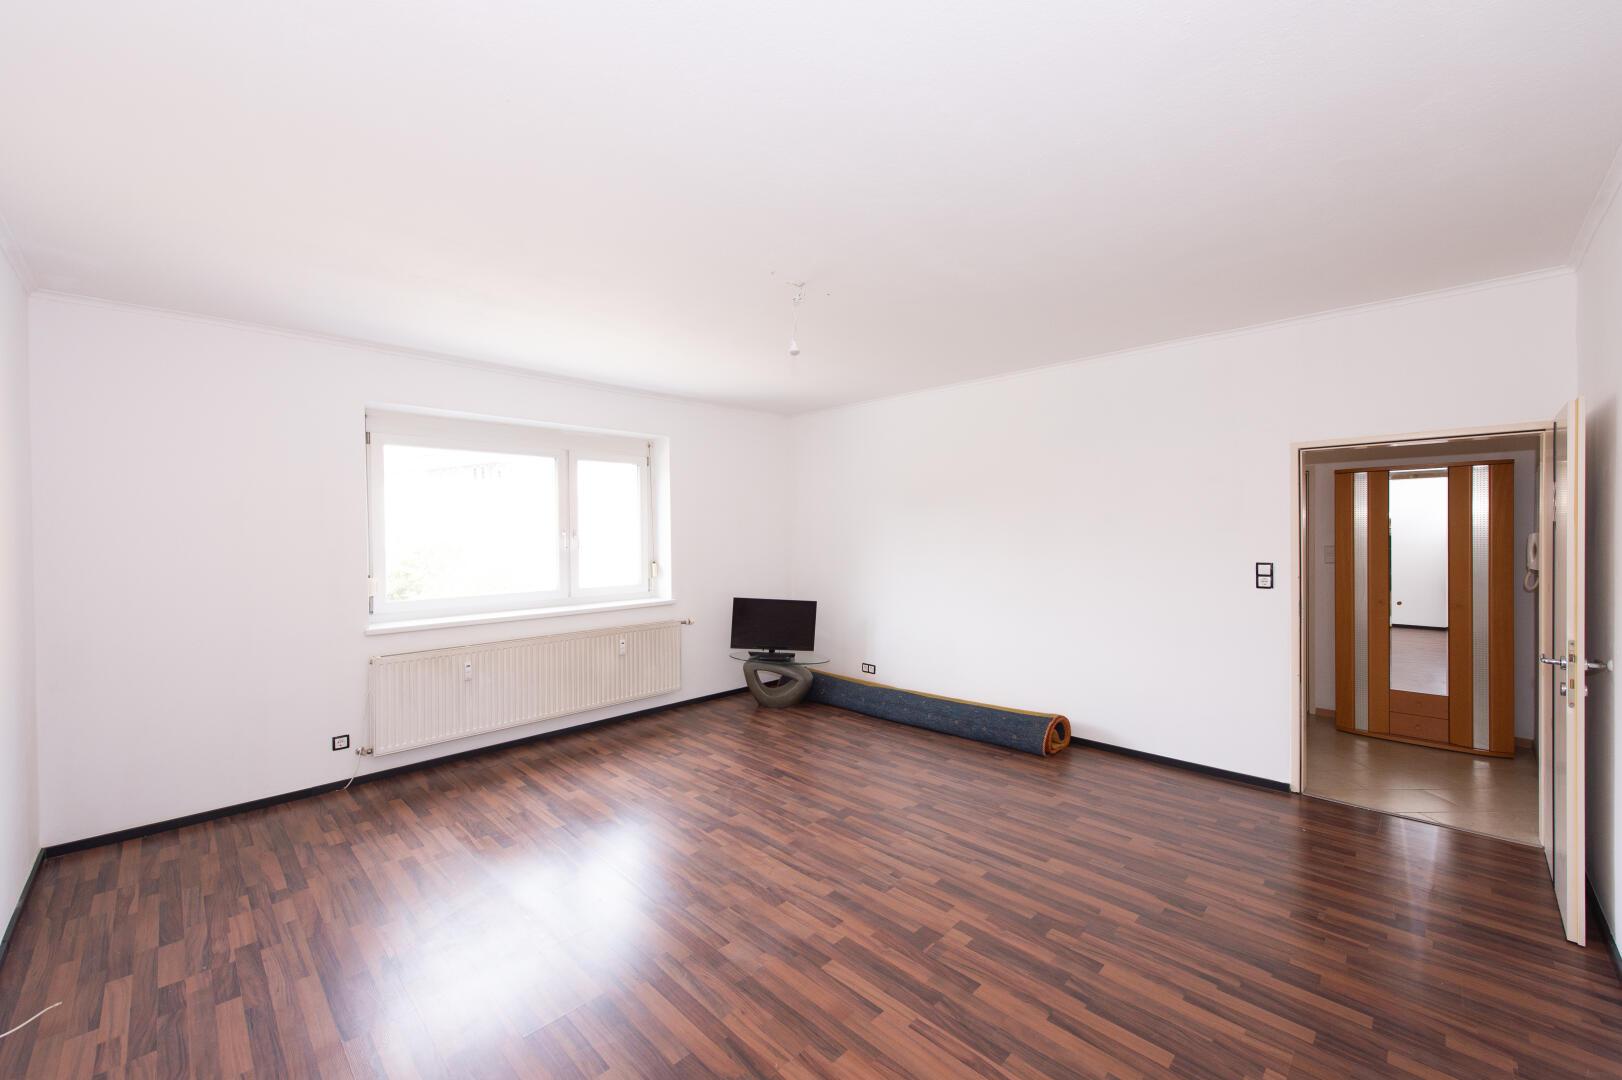 Wohnung zu kaufen: Reininghausstraße 39, 8020 Graz - Eigentumswohnung Eggenberg (10)